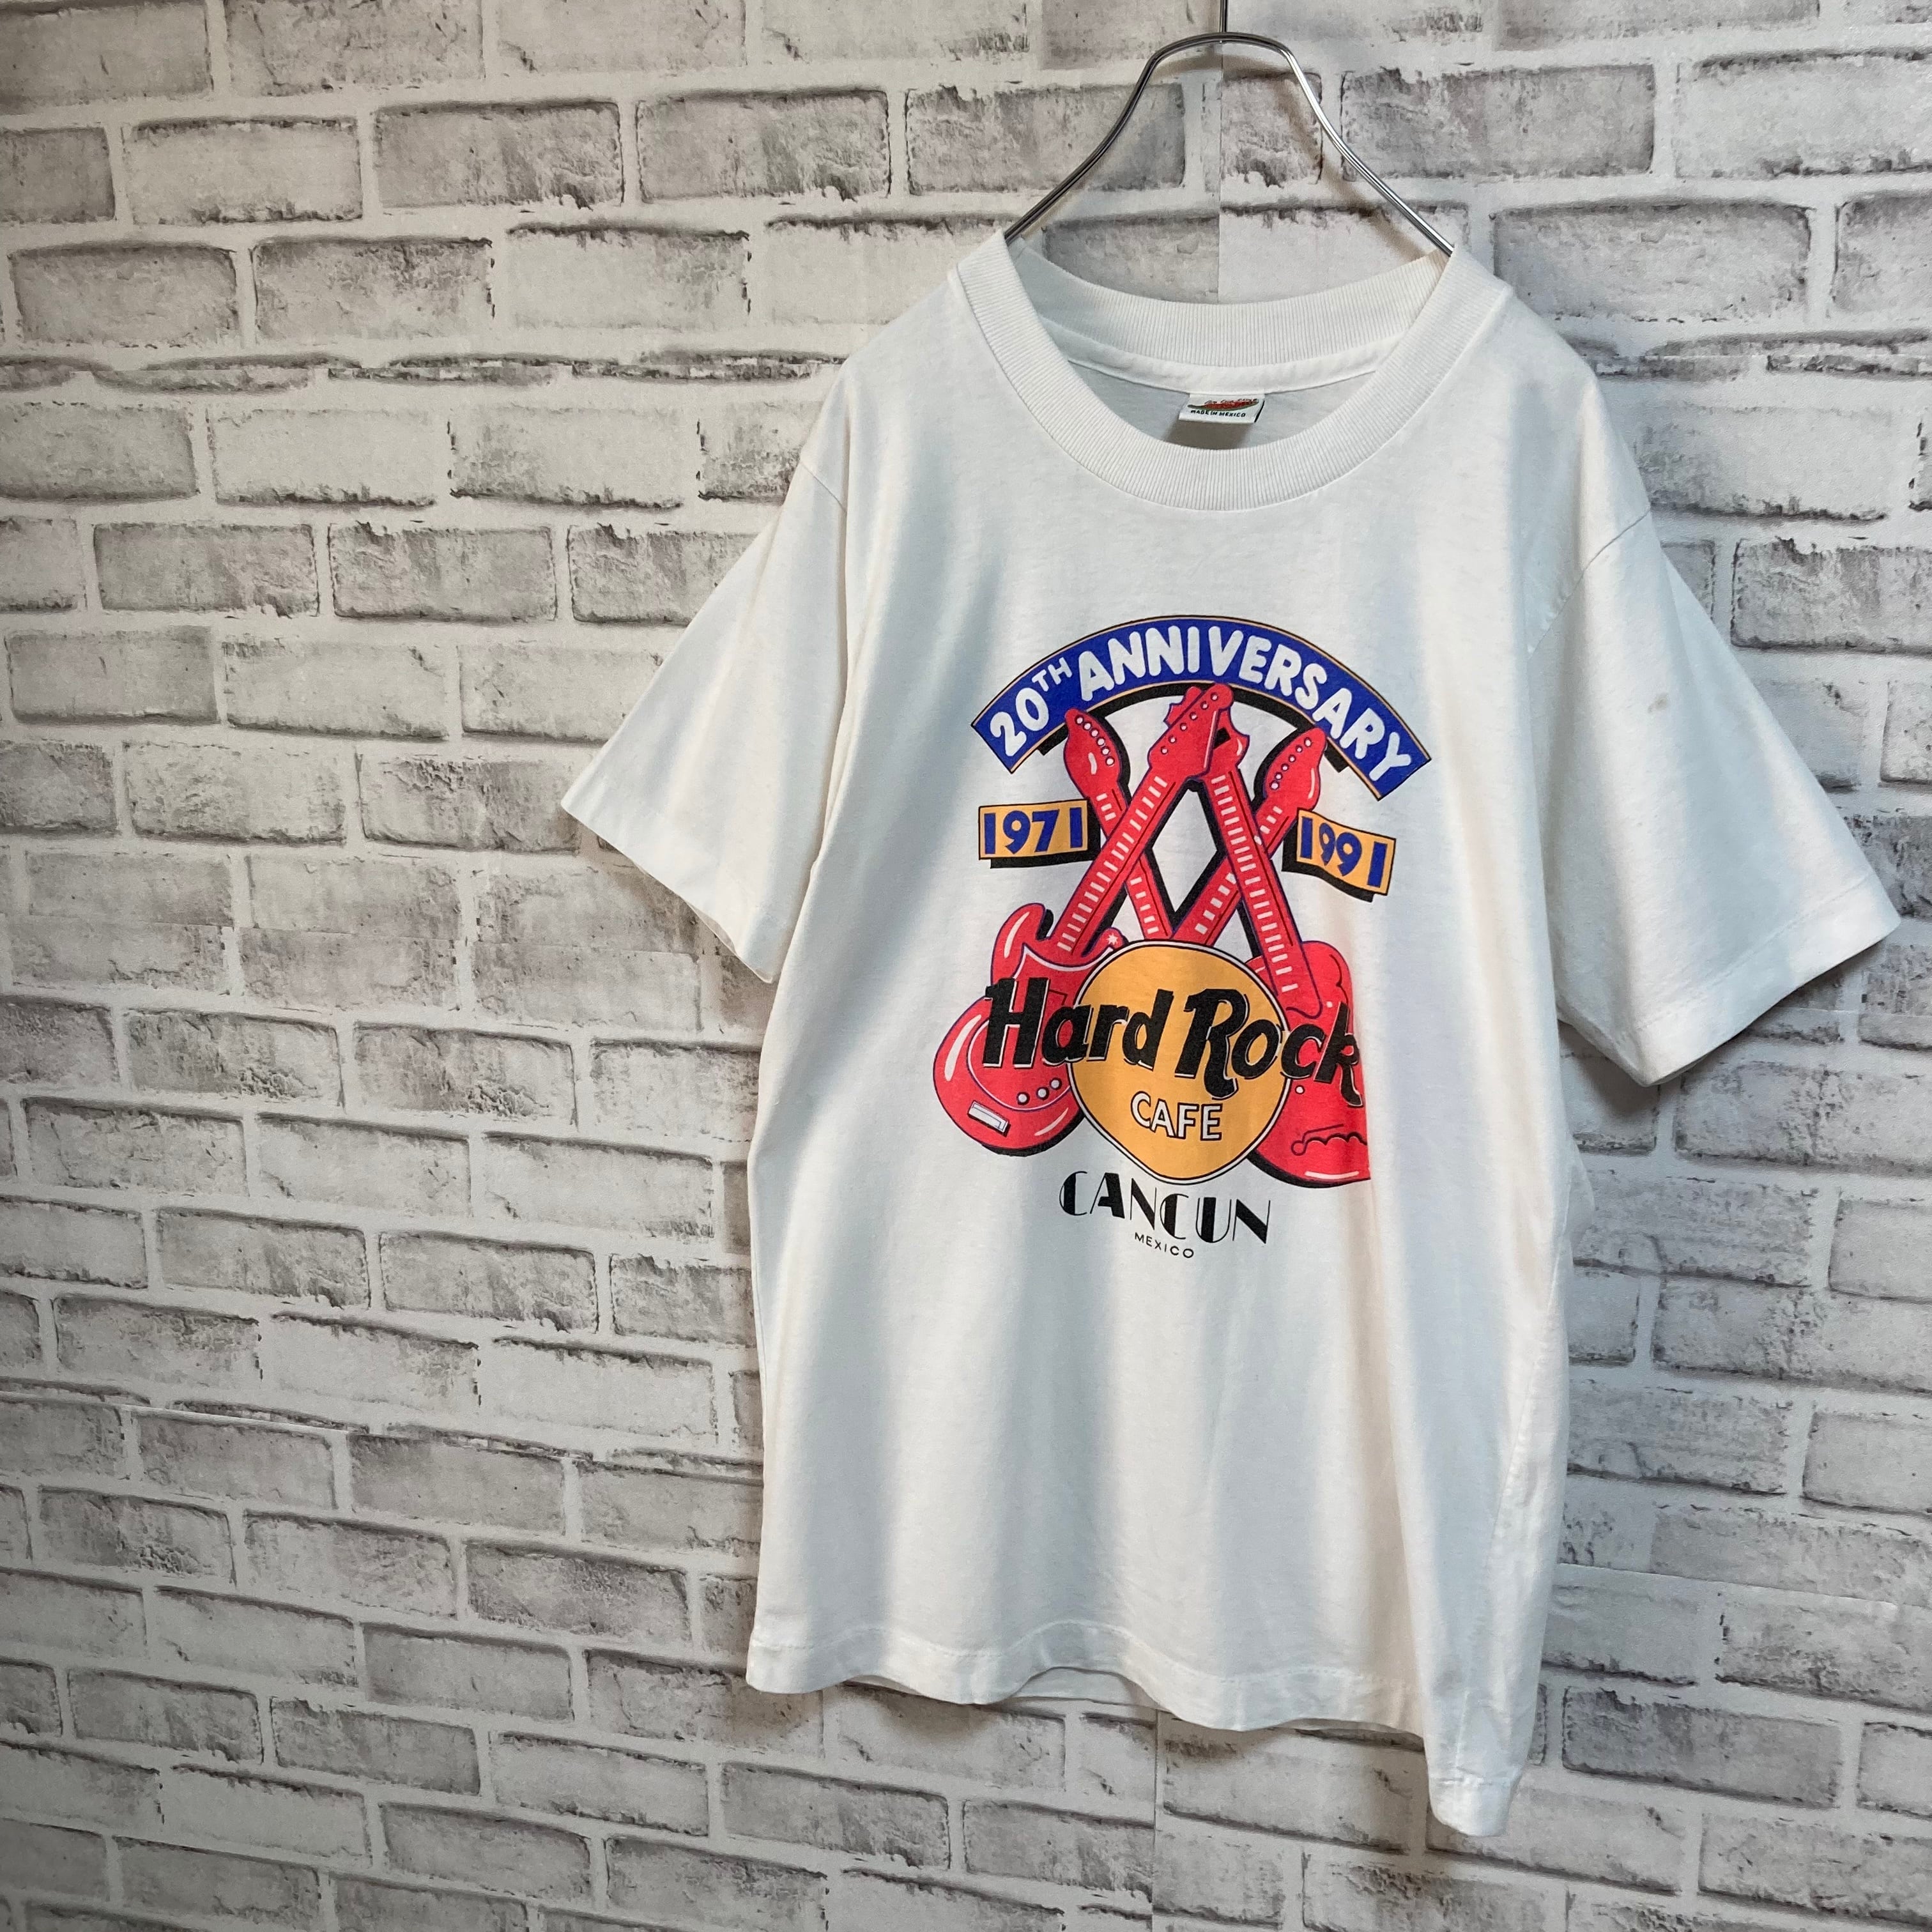 Com Cum shine】S/S Tee L 90s “Hard Rock CAFE” ハードロックカフェ ...